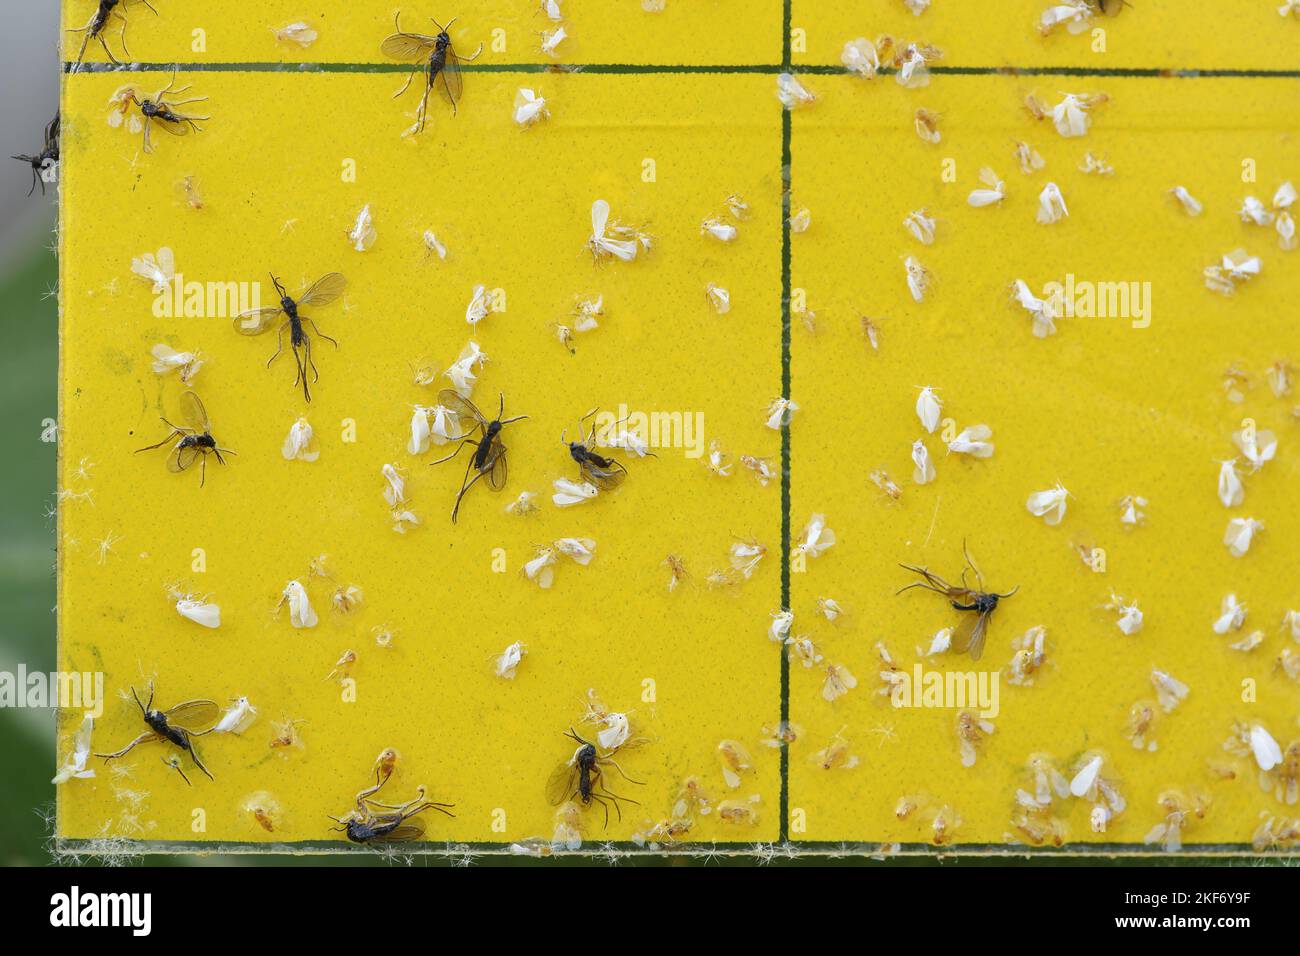 Les mouettes à ailes sombres et les mouches blanches sont coincées dans un piège collant jaune. Les blancs piégés et les Sciaridae volent collant dans un piège. Banque D'Images